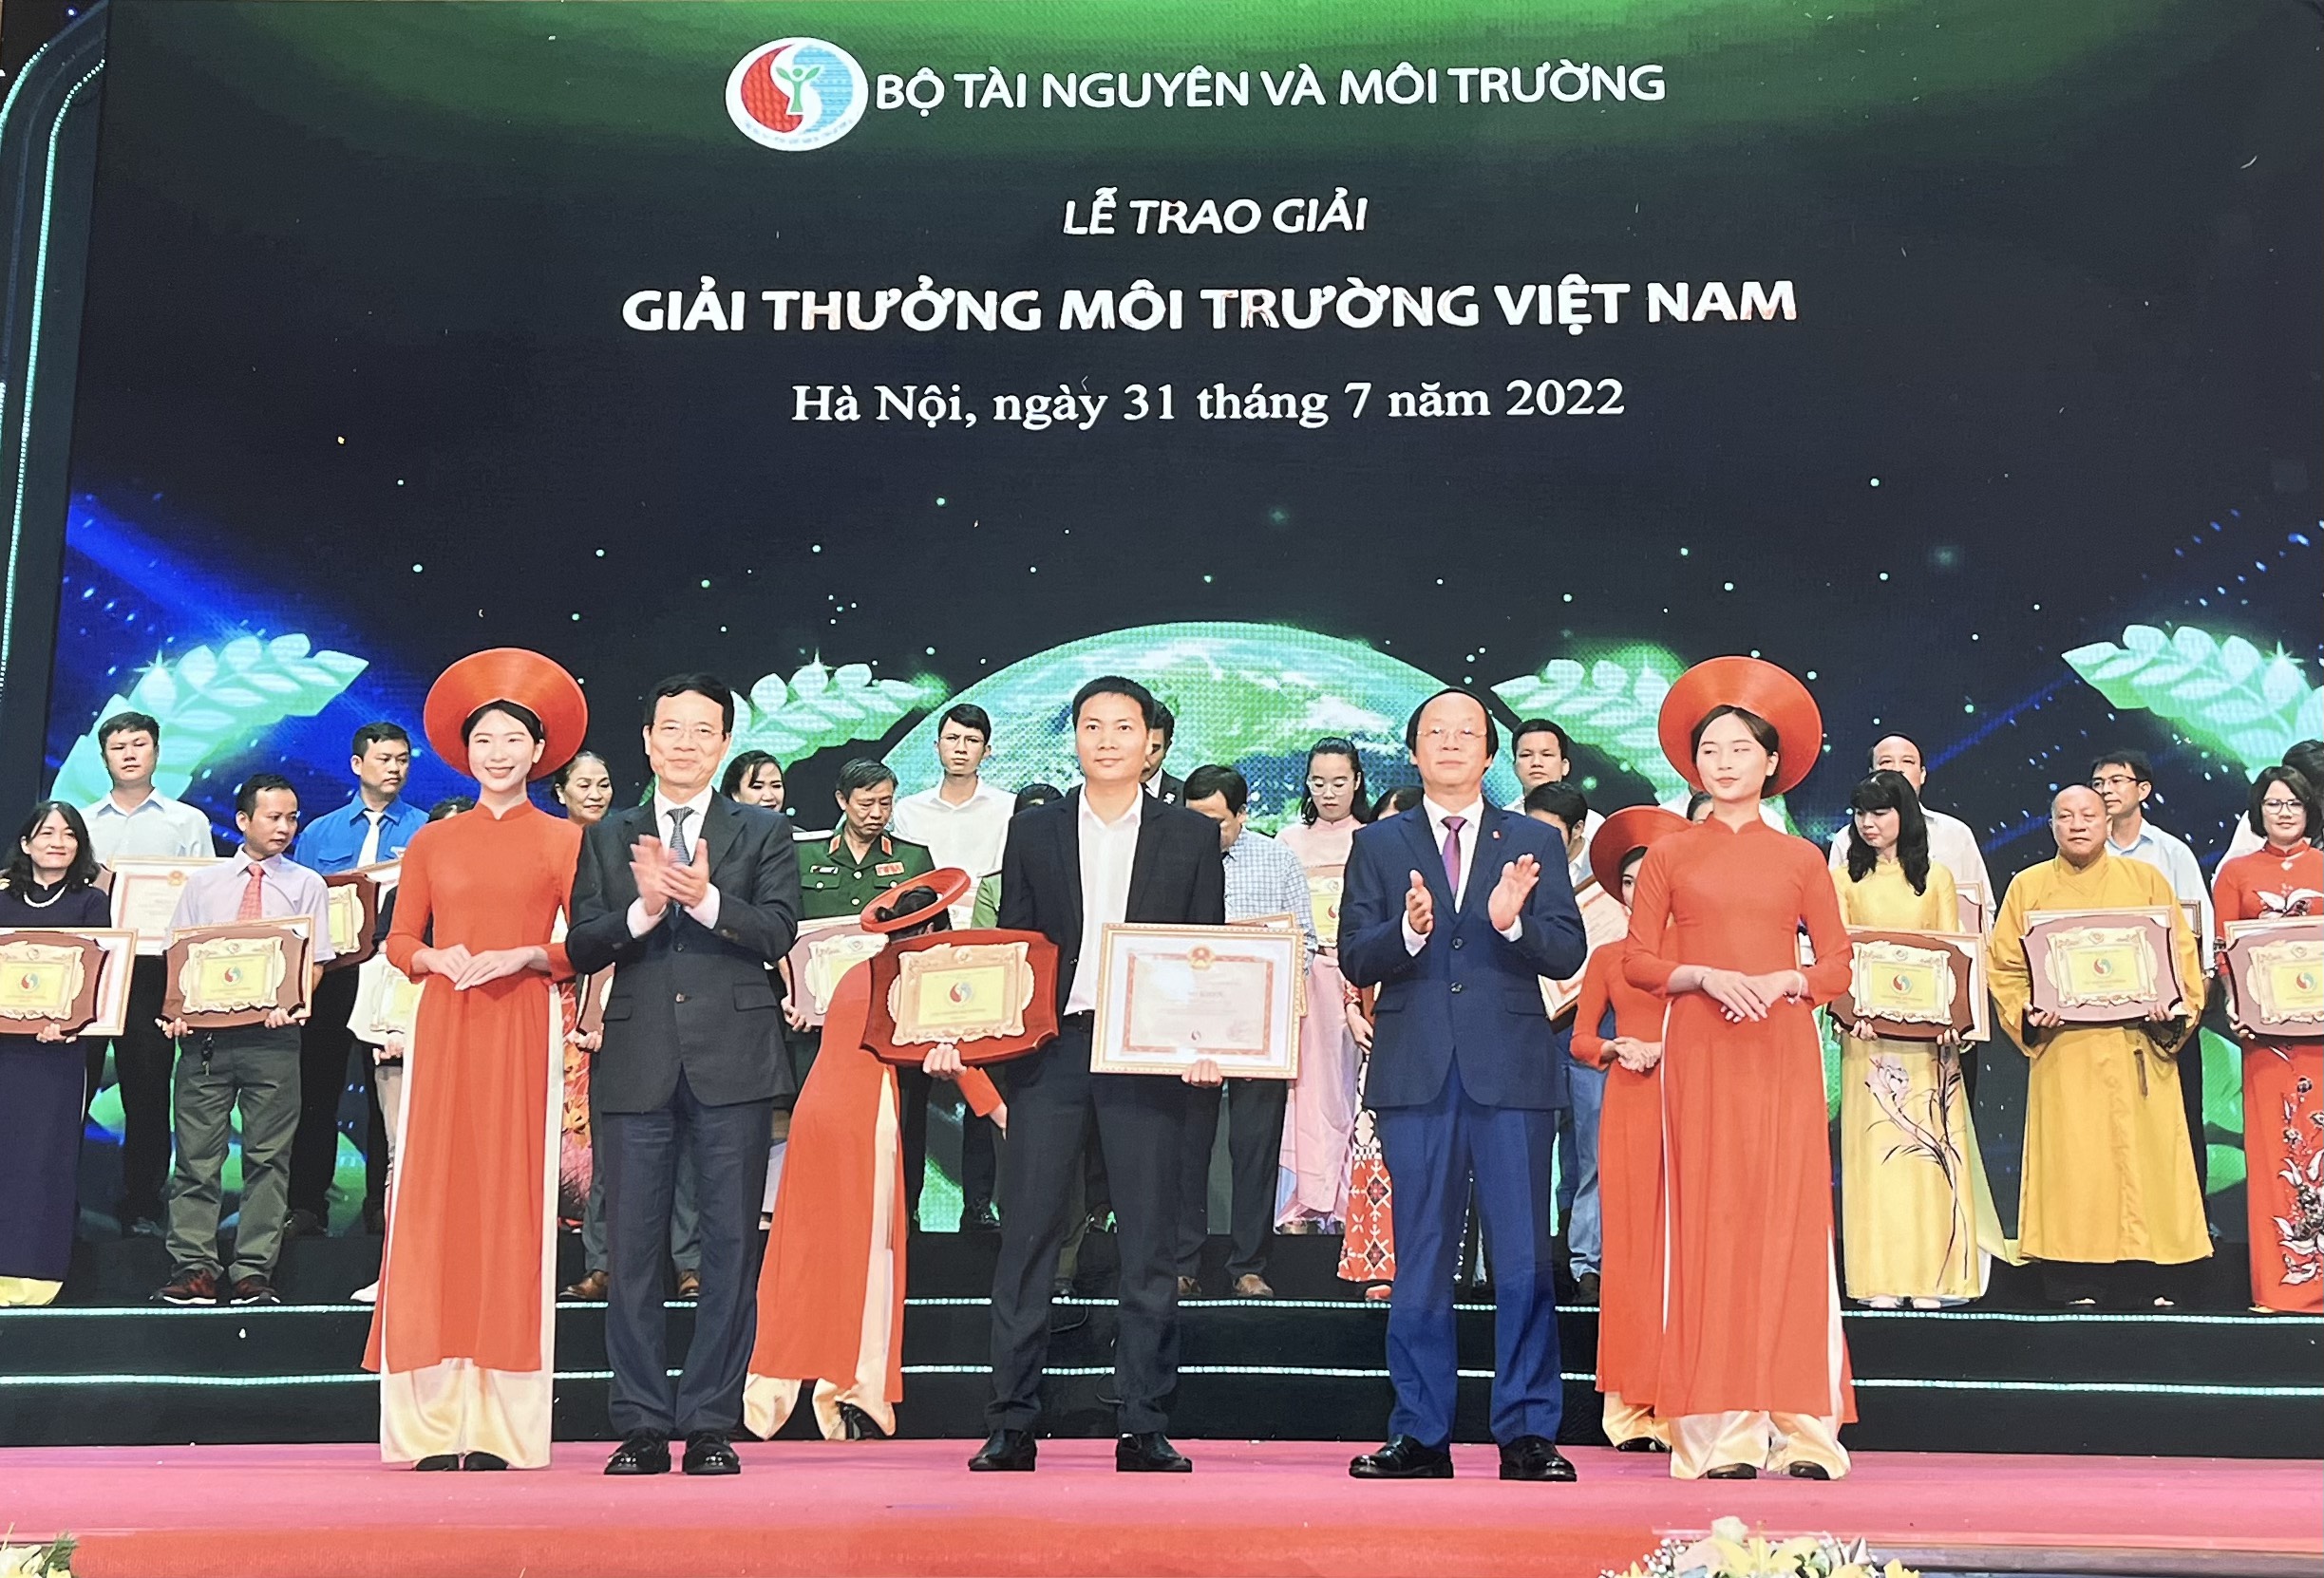 Kinh doanh - Cụm trang trại bò sữa Vinamilk Đà Lạt được vinh danh tại giải thưởng môi trường Việt Nam